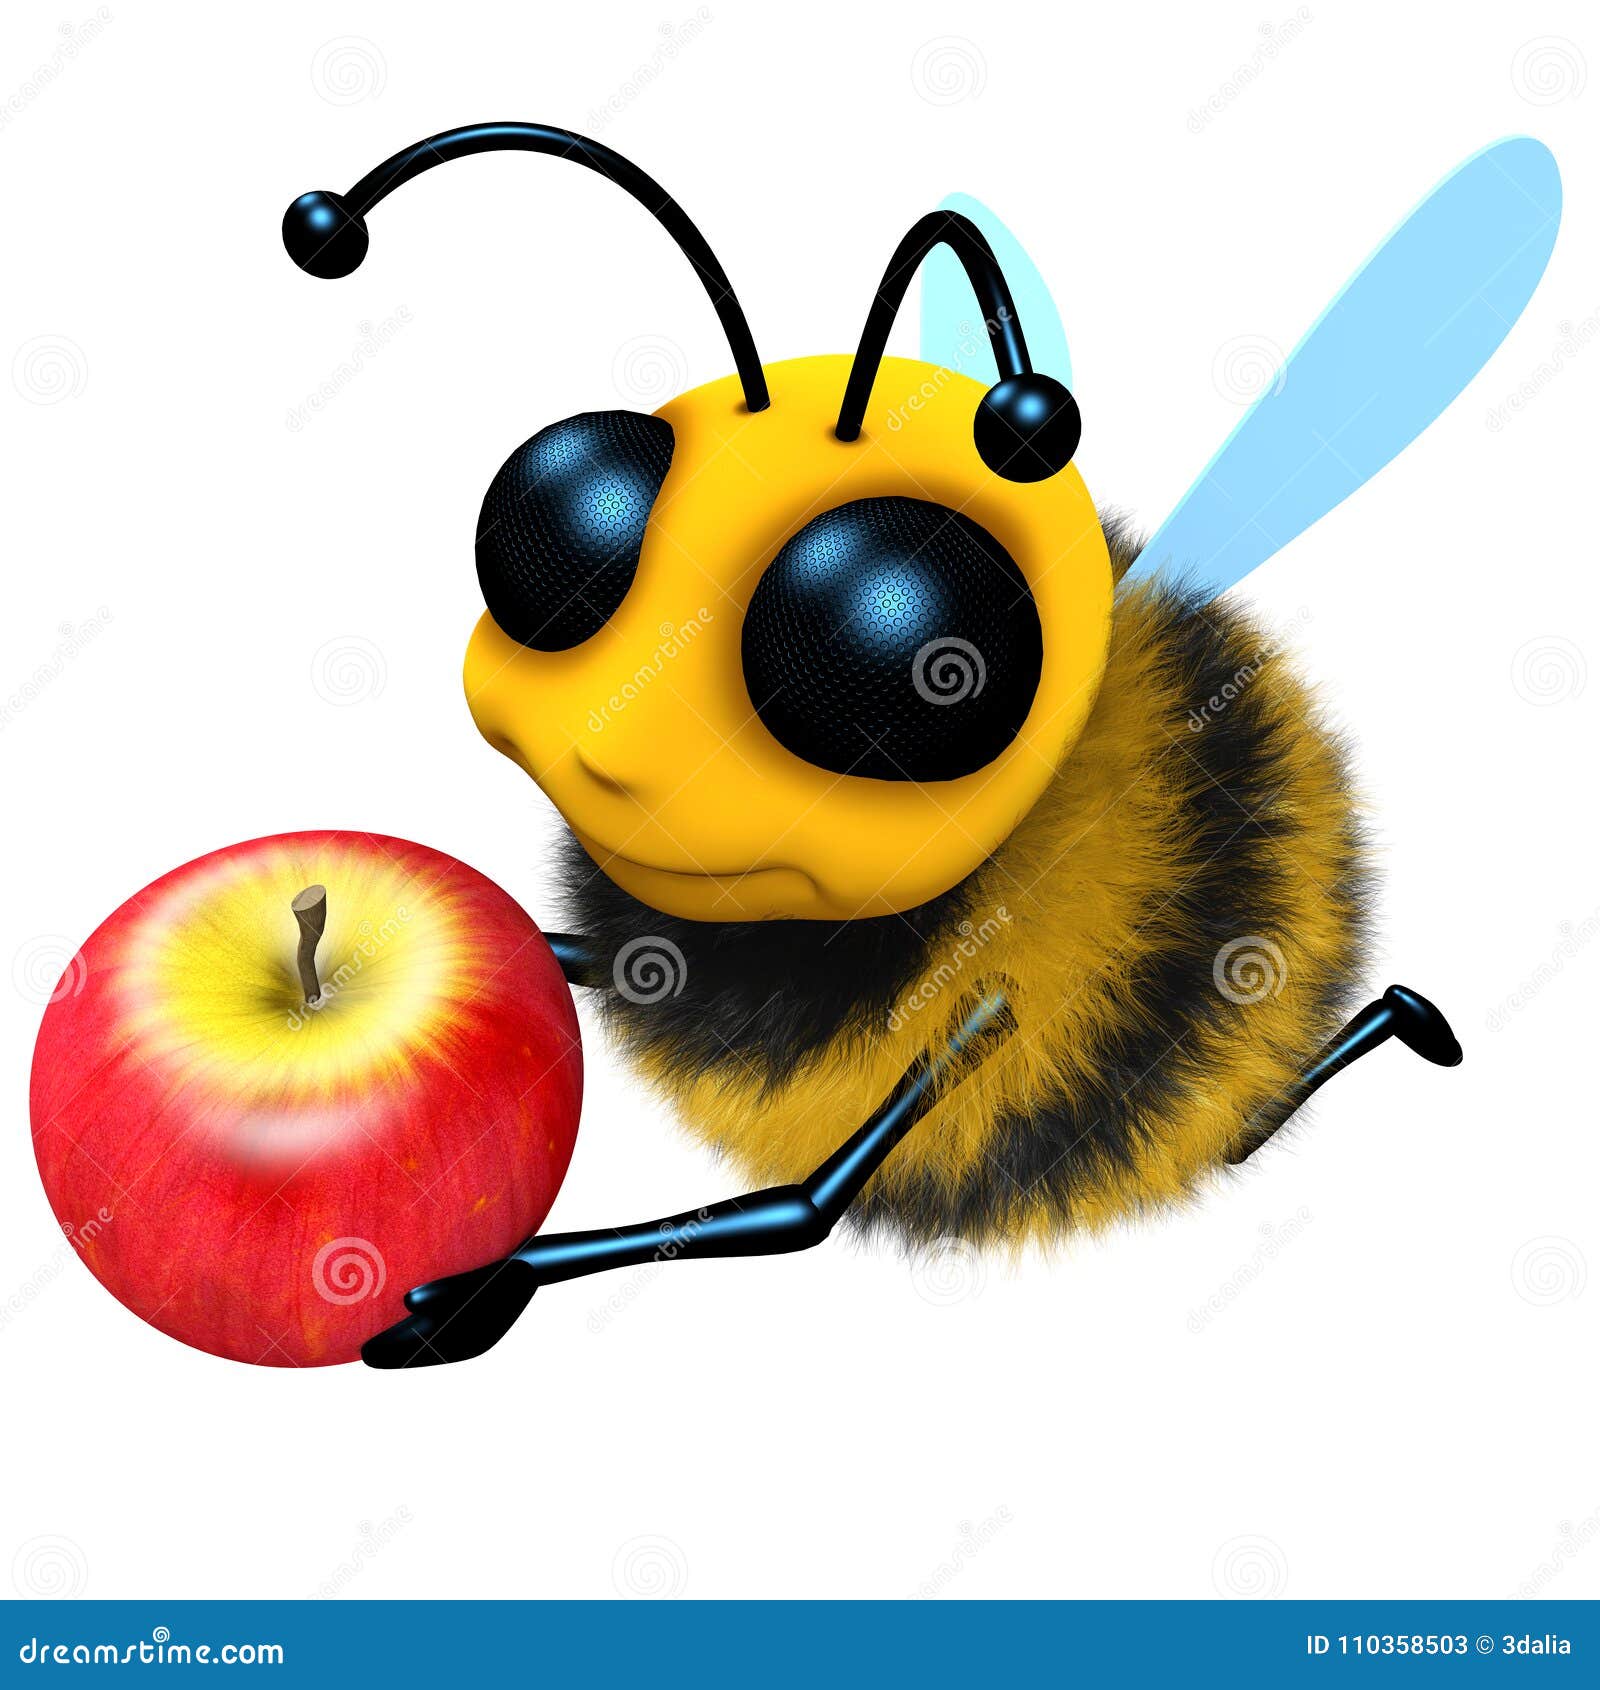 d-render-funny-cartoon-honey-bee-character-holding-juicy-apple-d-funny-cartoon-honey-bee-character-holding-juicy-apple-110358503.jpg